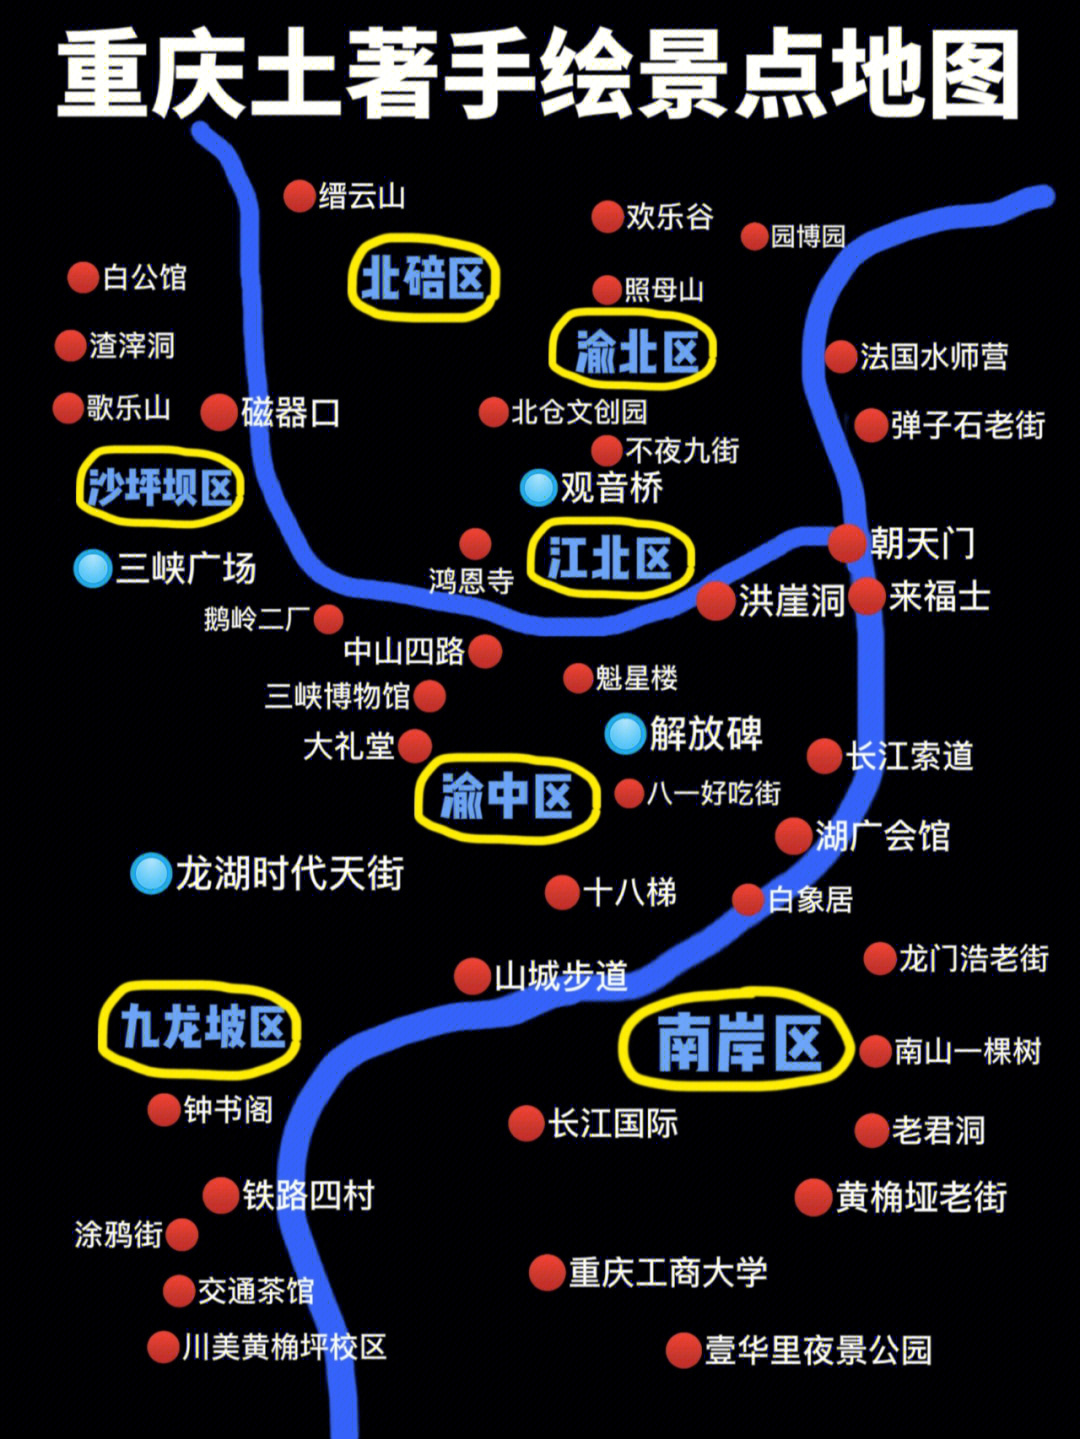 重庆各大景点距离地图图片